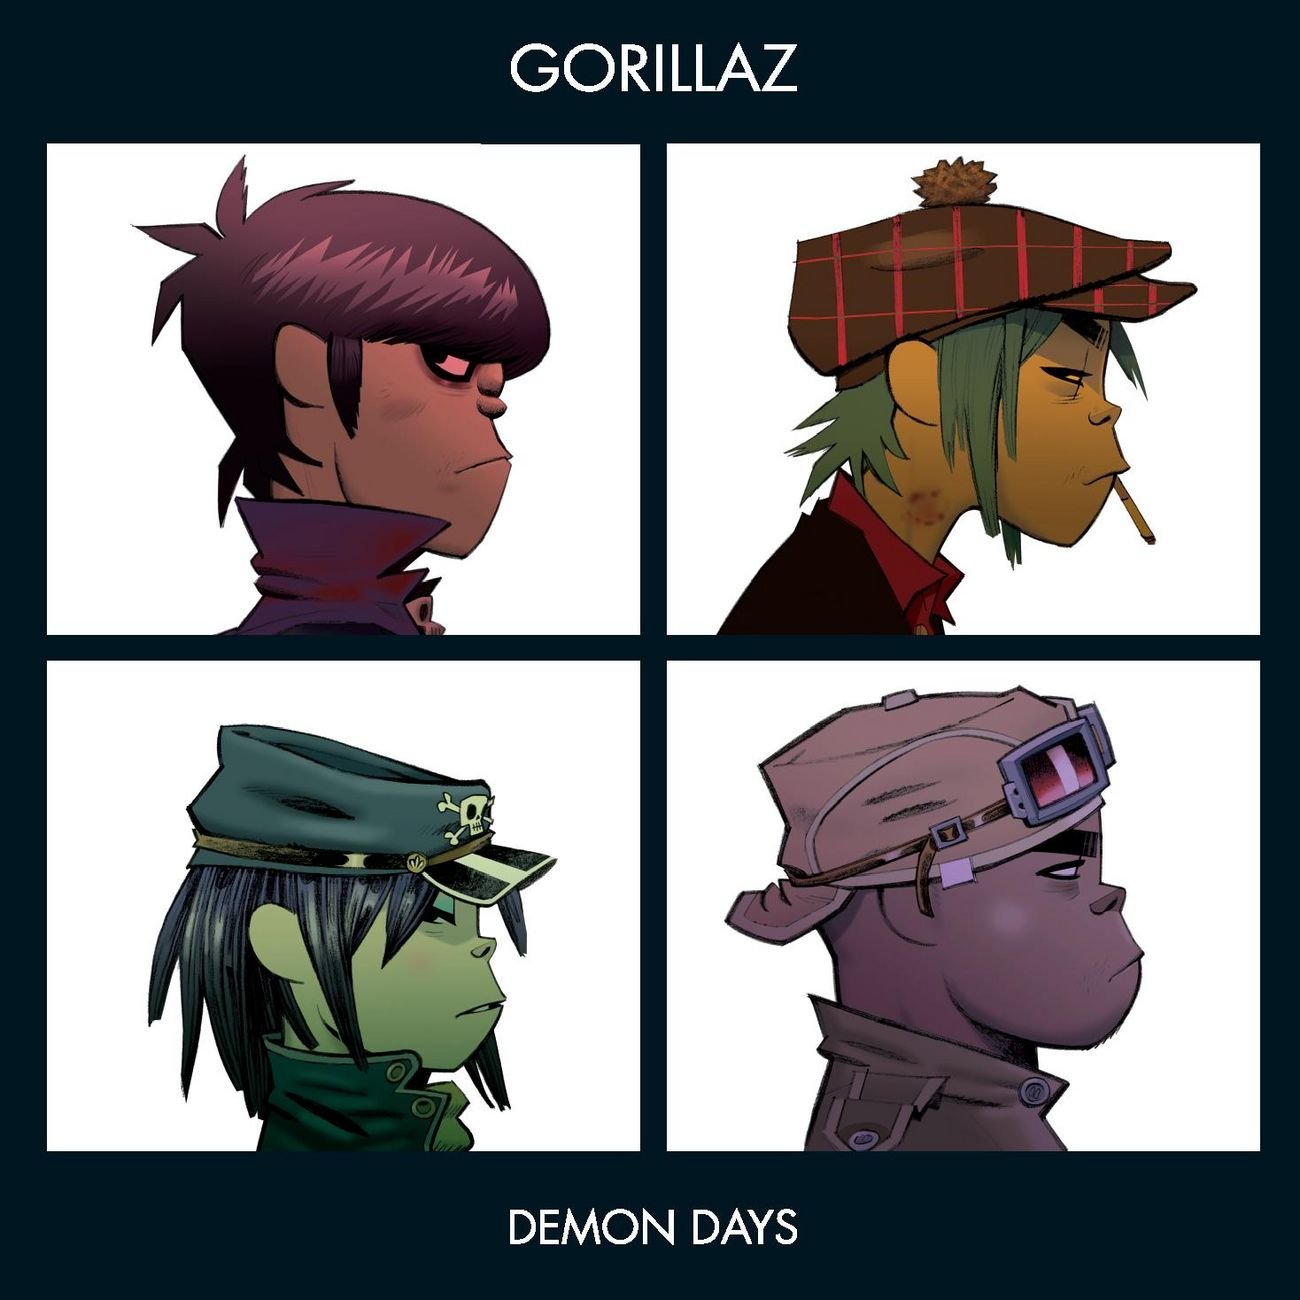 Gorillaz "Demon Days" CD